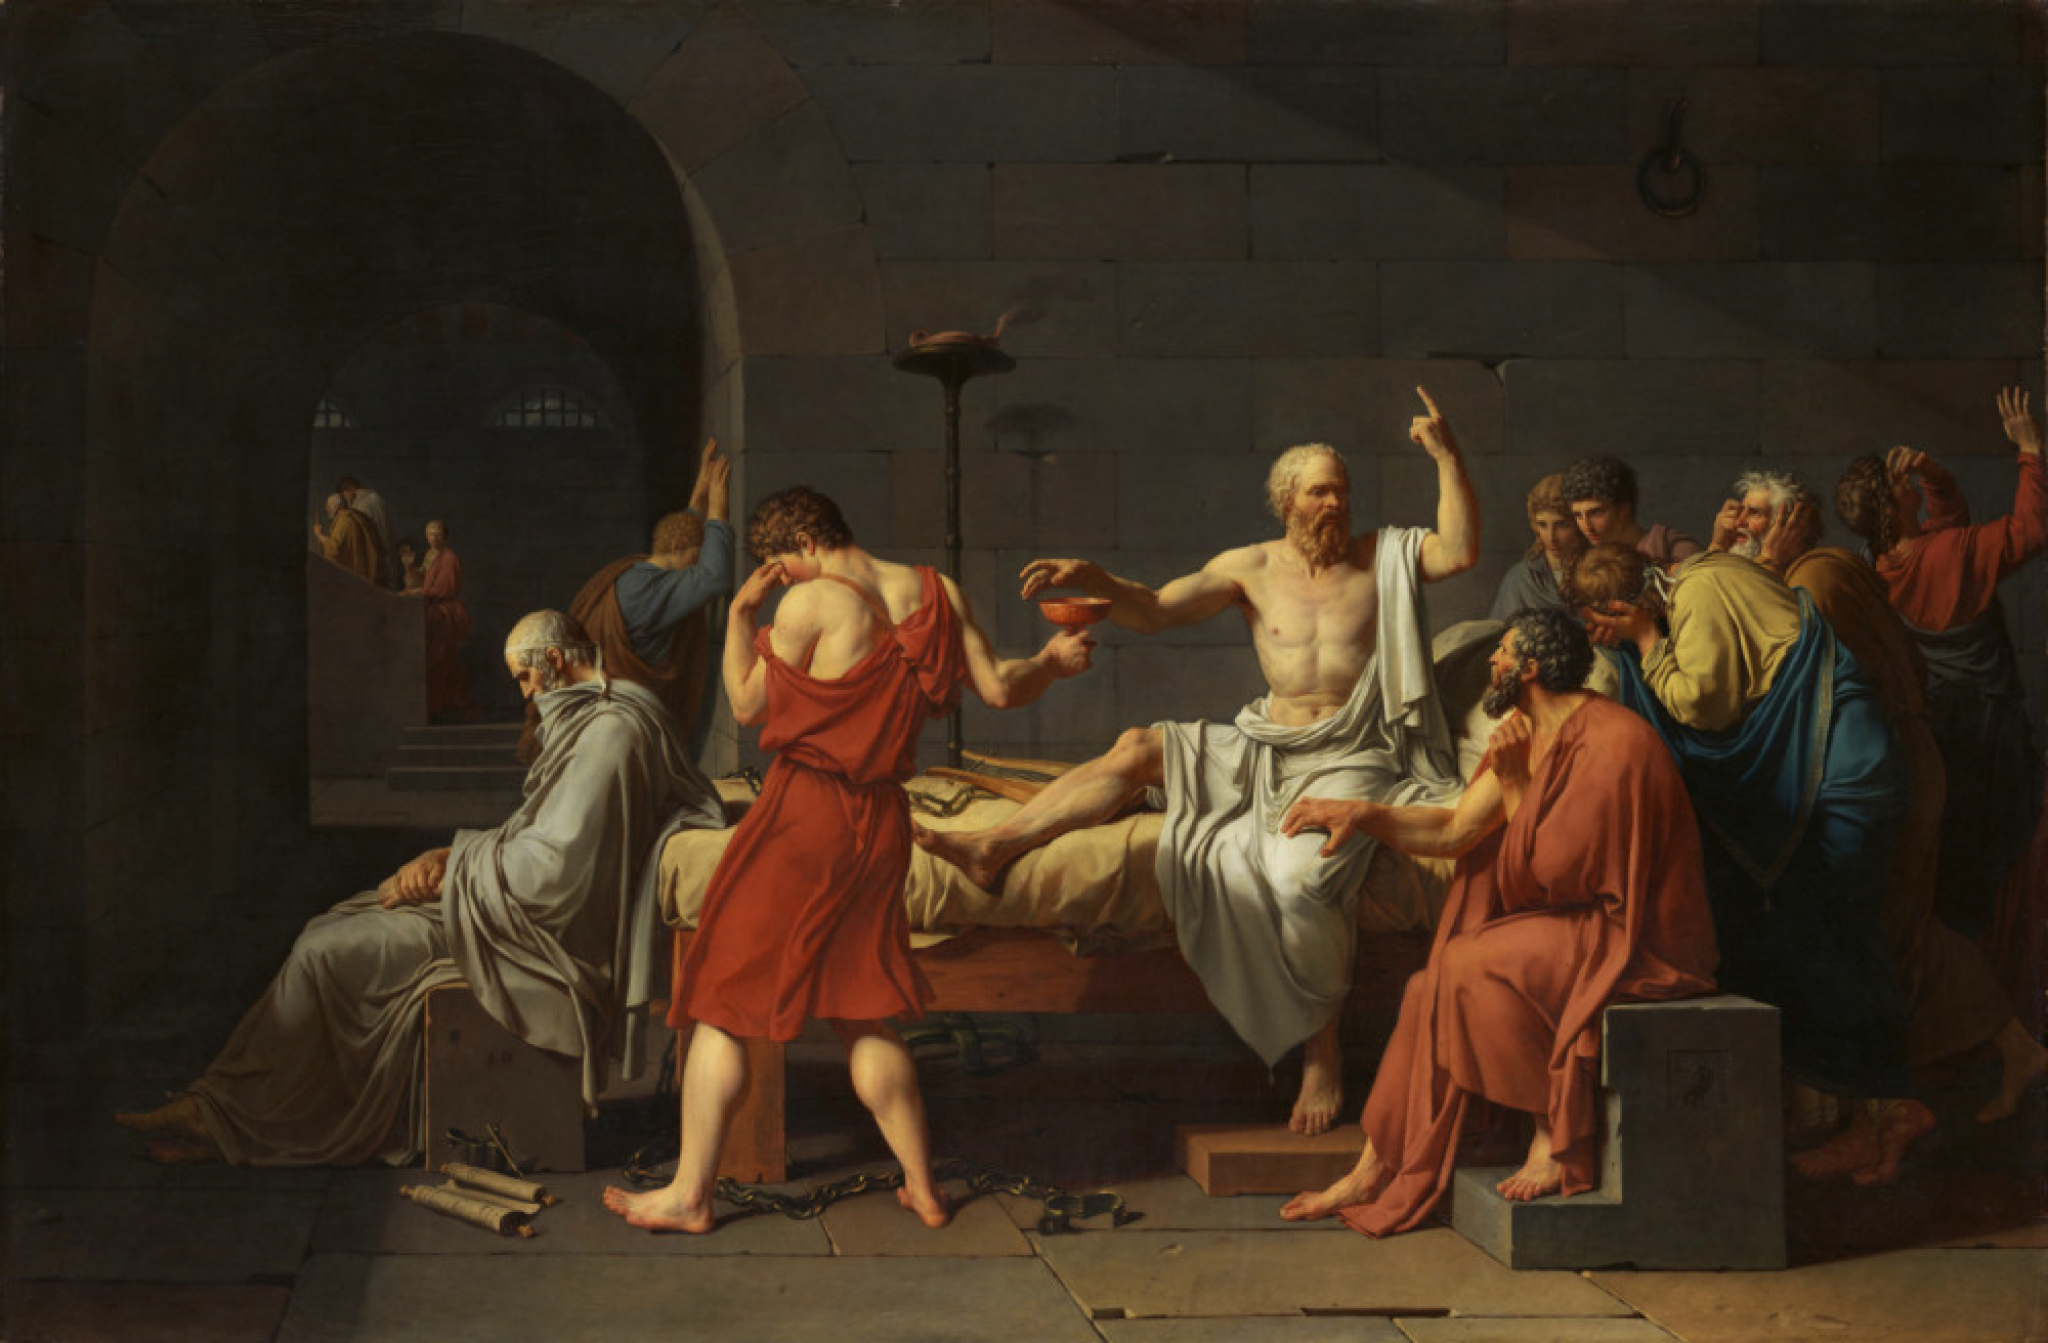 sokrat, filozof, grčka, antička grčka